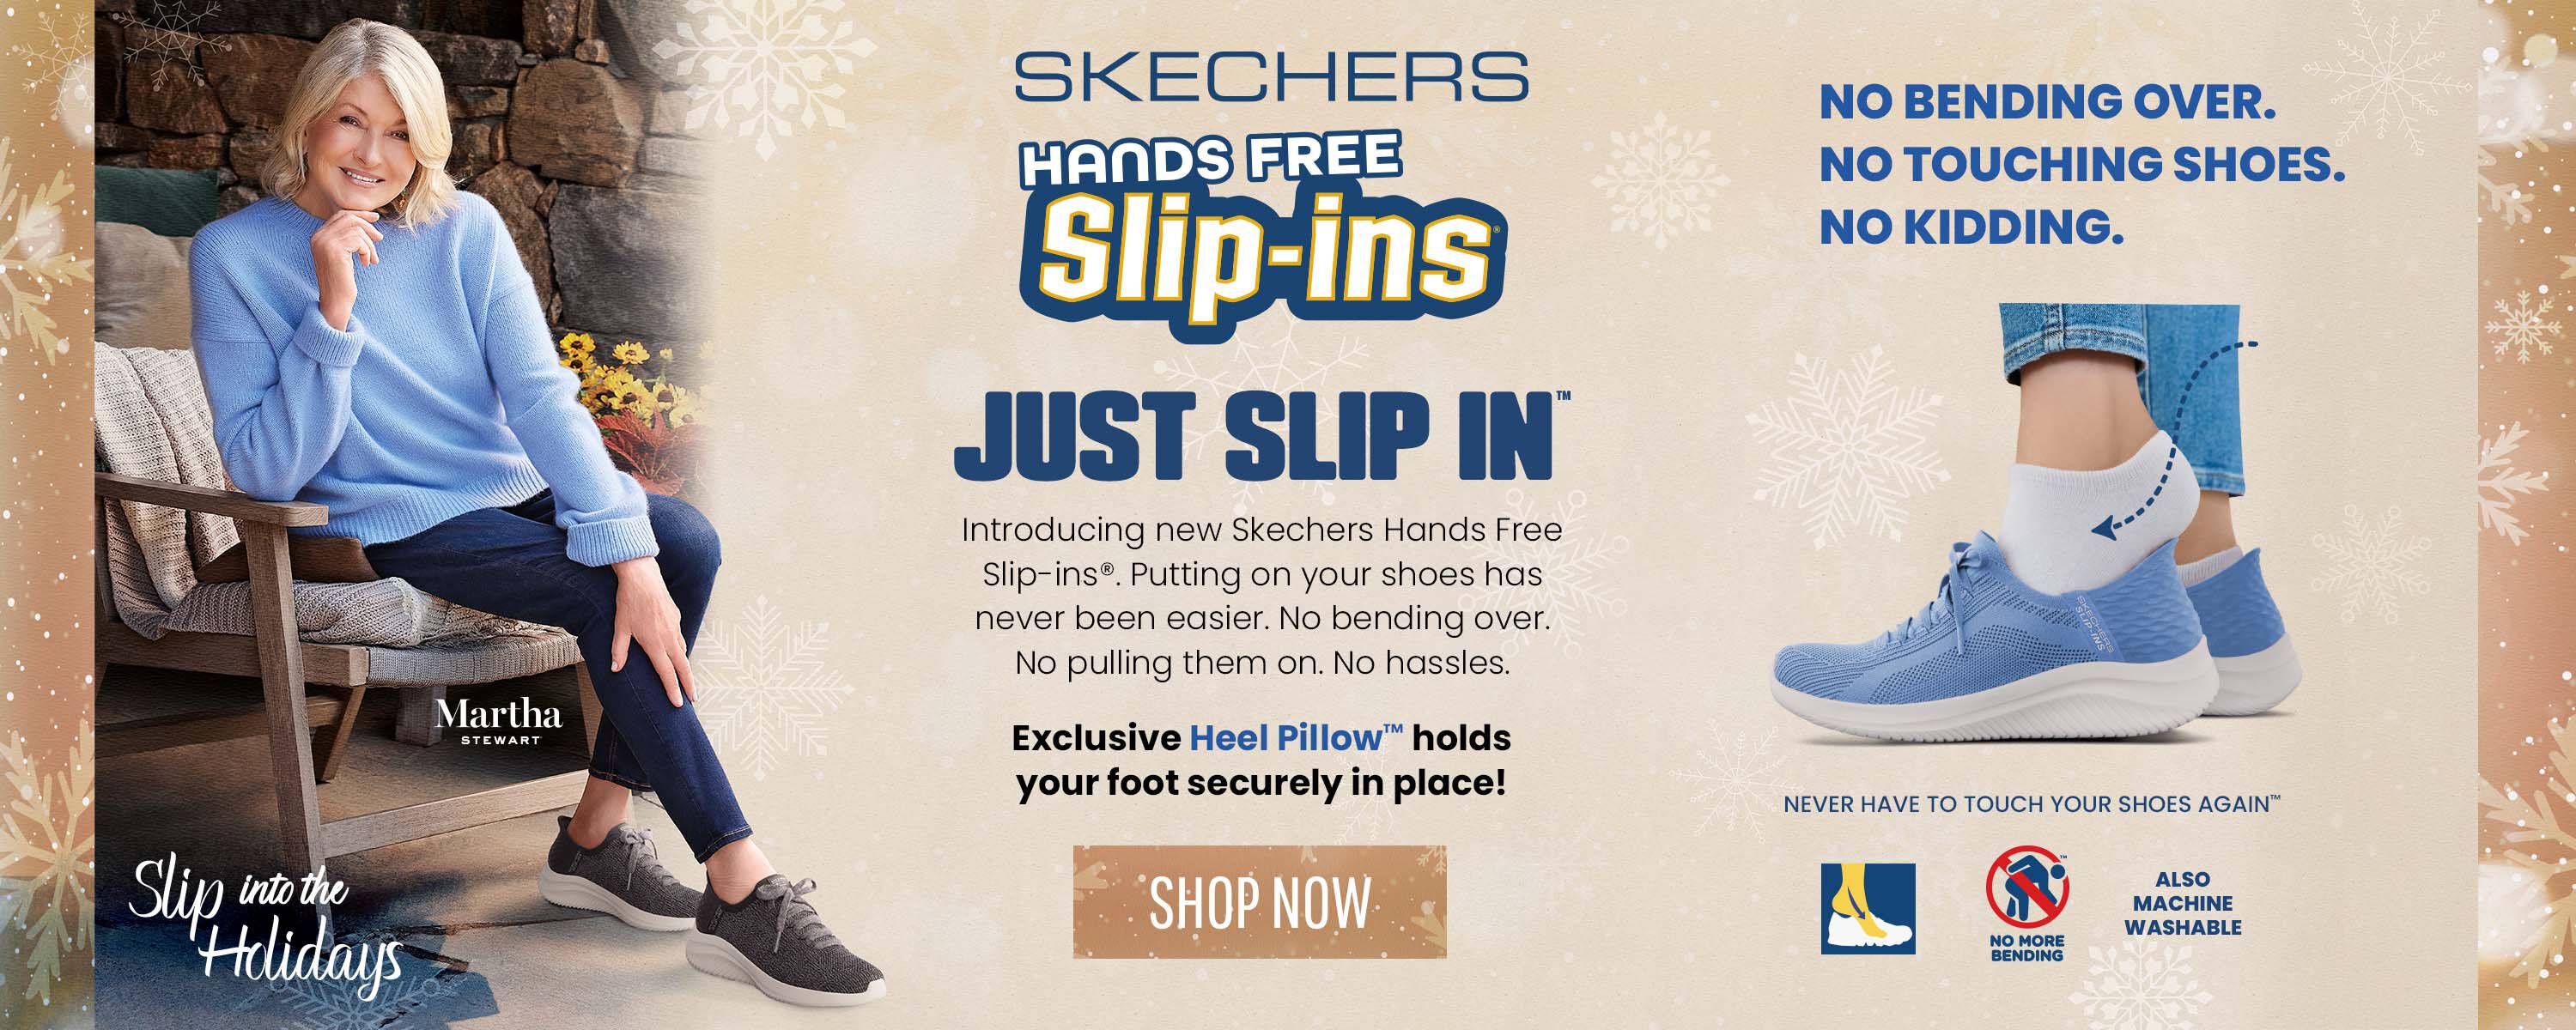 Skechers Hands Free Slip-ins - Shop Now